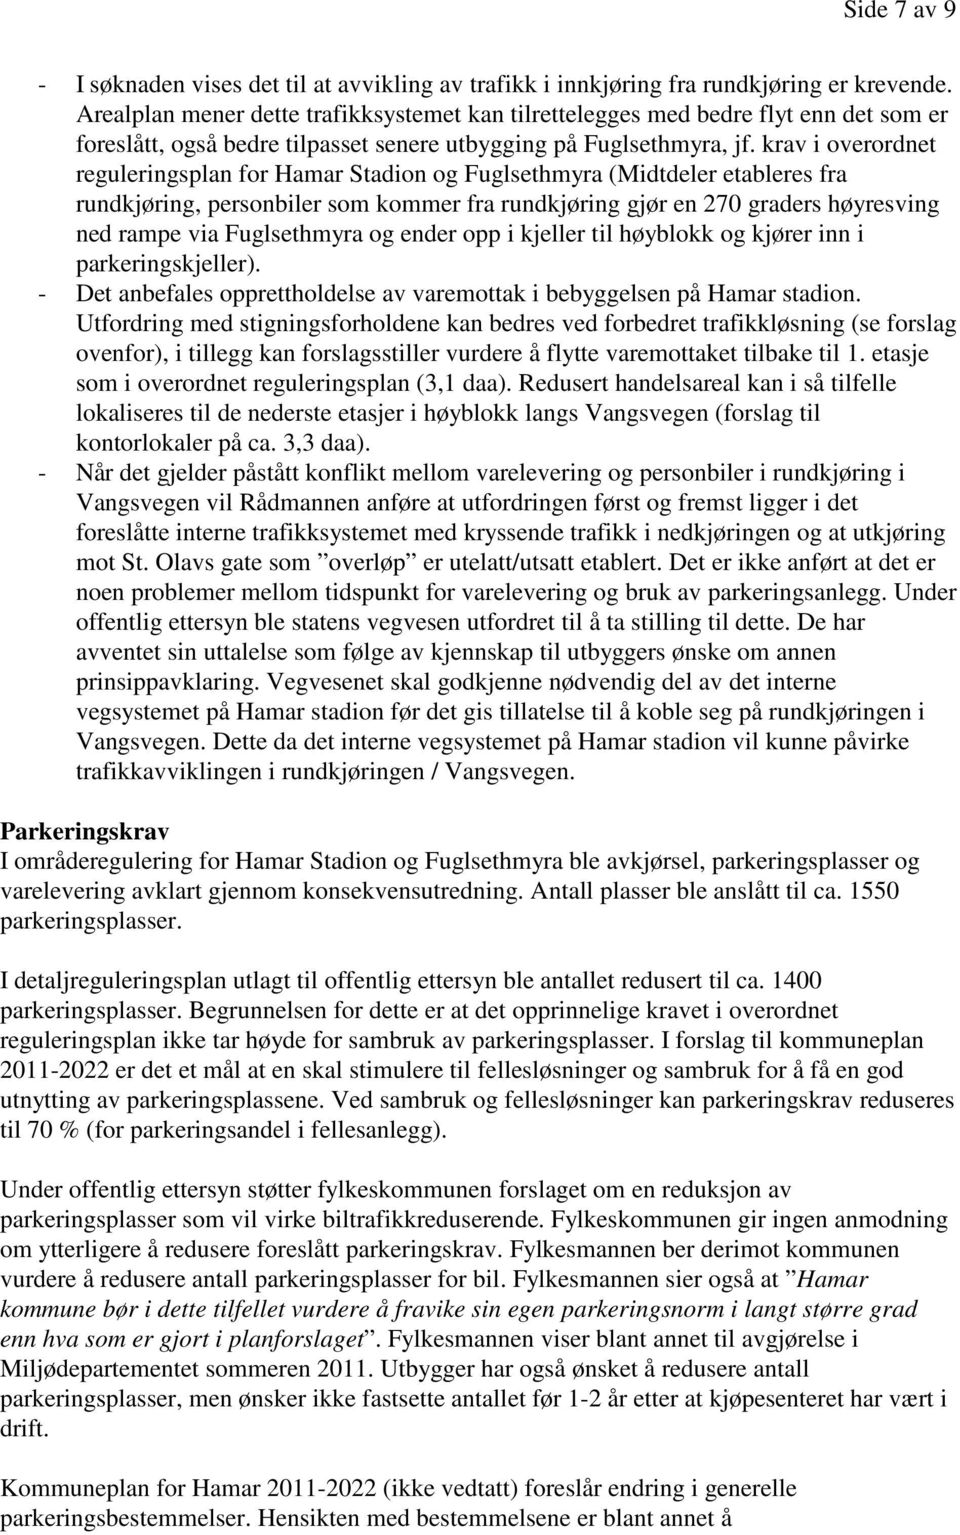 krav i overordnet reguleringsplan for Hamar Stadion og Fuglsethmyra (Midtdeler etableres fra rundkjøring, personbiler som kommer fra rundkjøring gjør en 270 graders høyresving ned rampe via